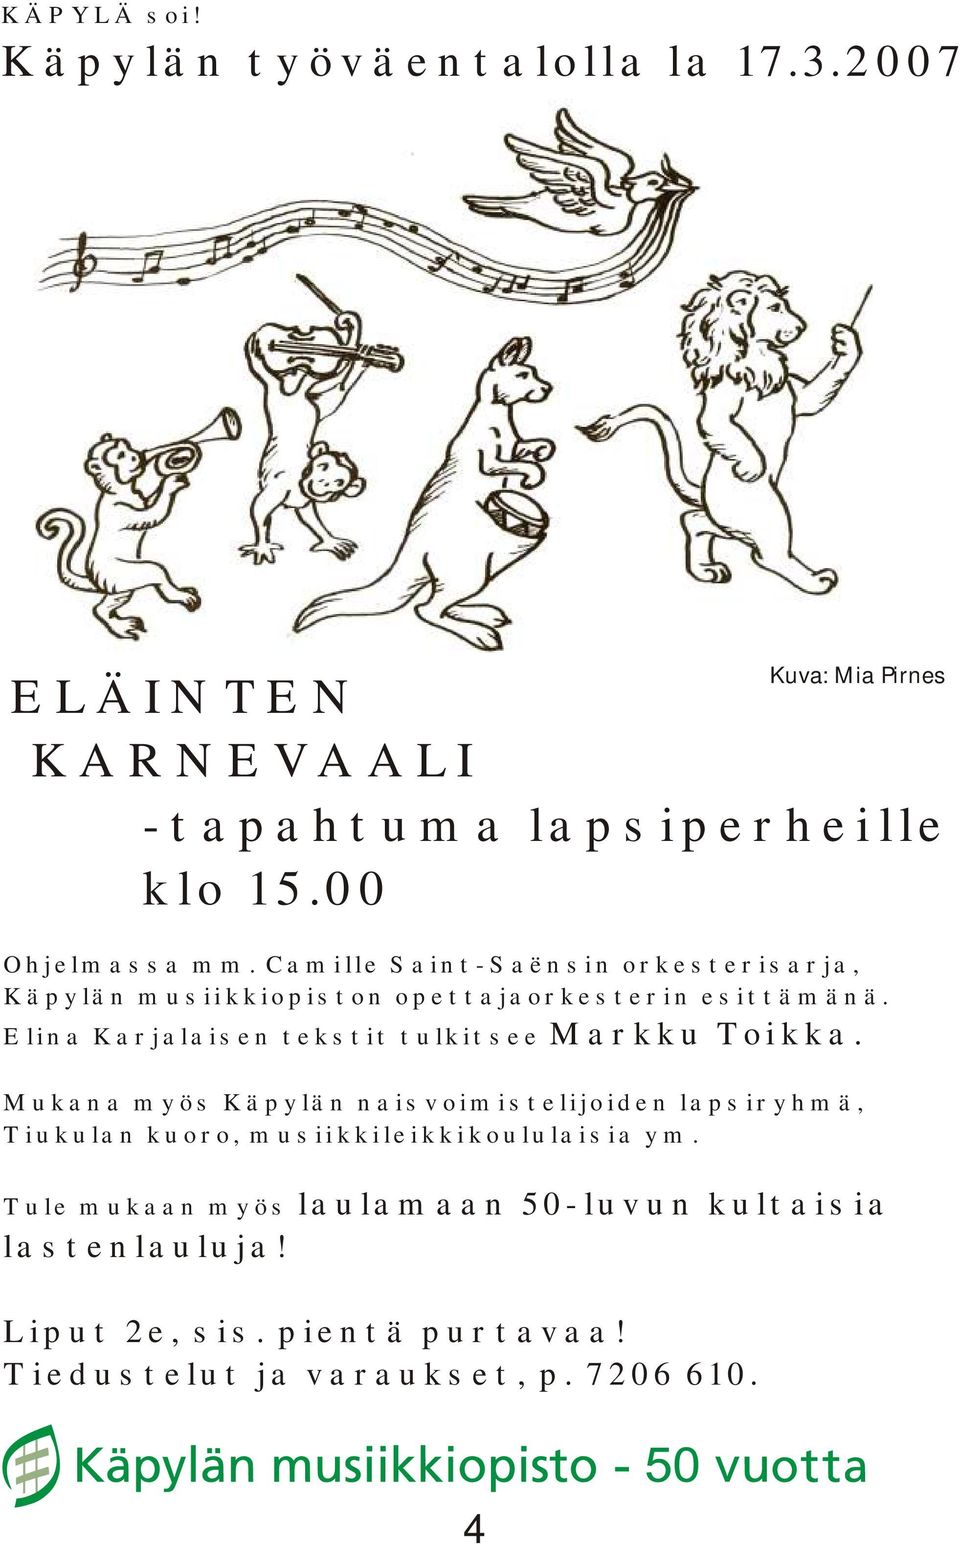 Elina Karjalaisen tekstit tulkitsee Markku Toikka.